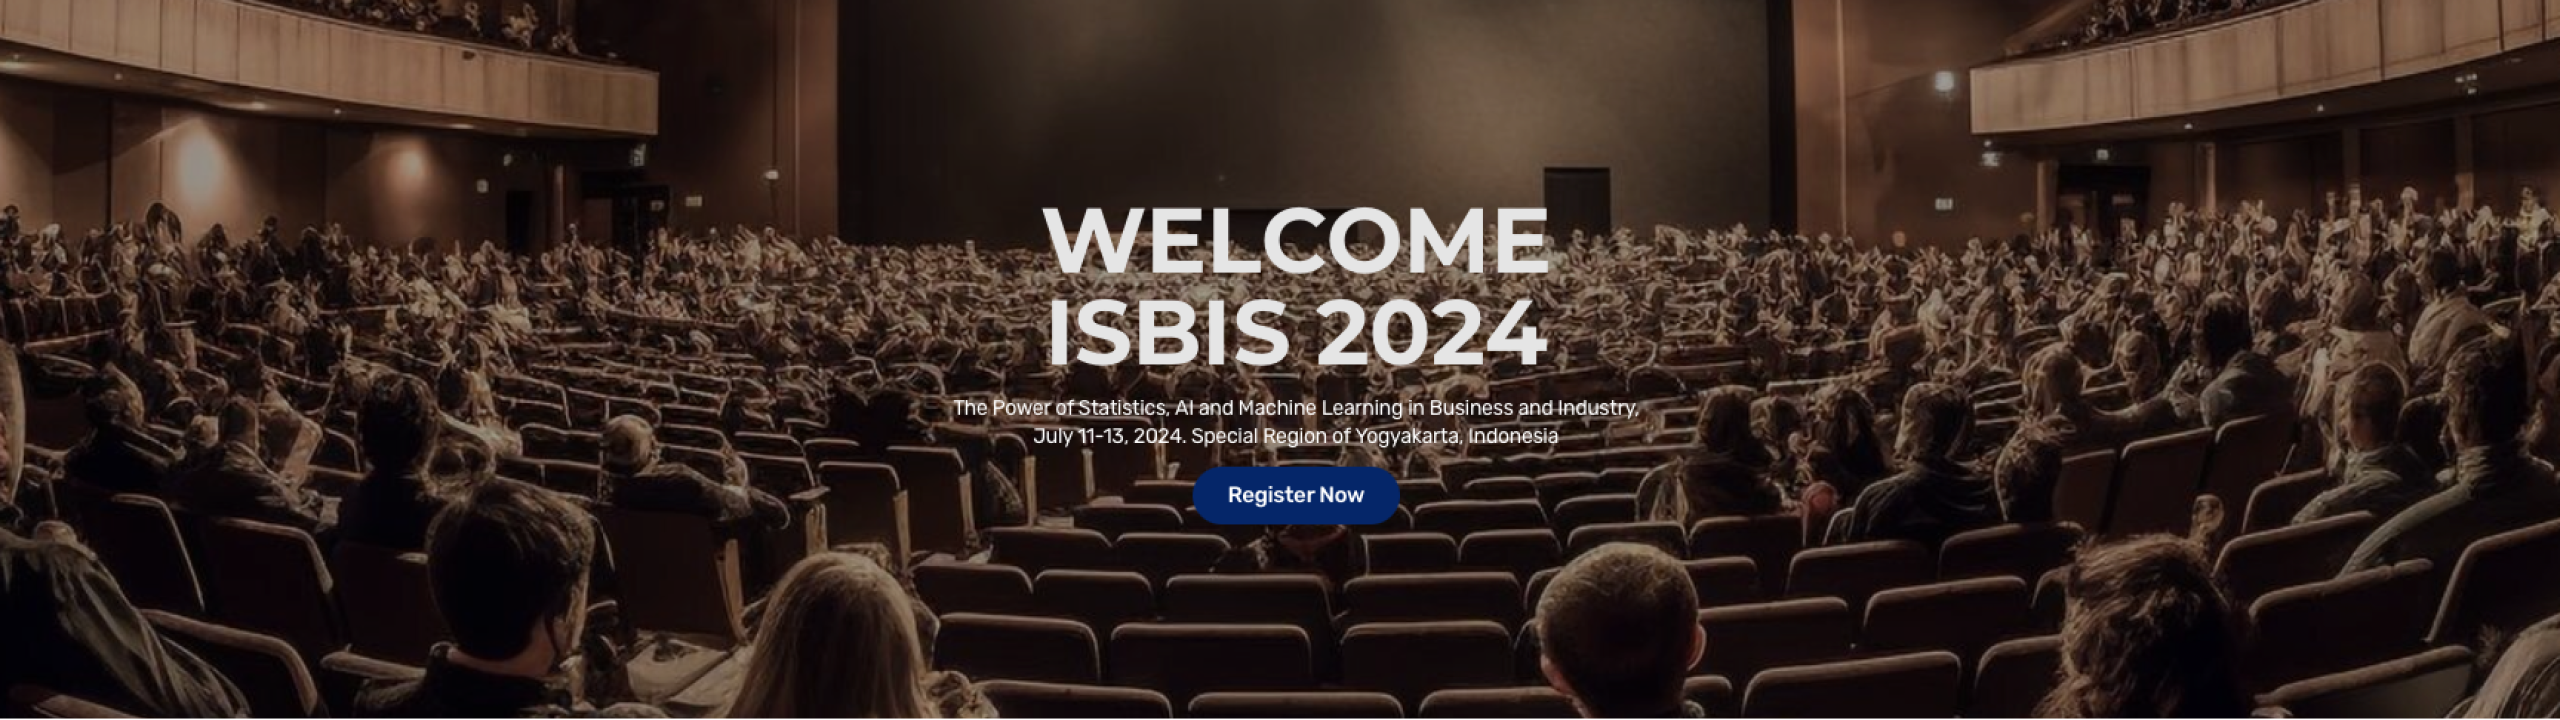 ISBIS-2024-Symposium